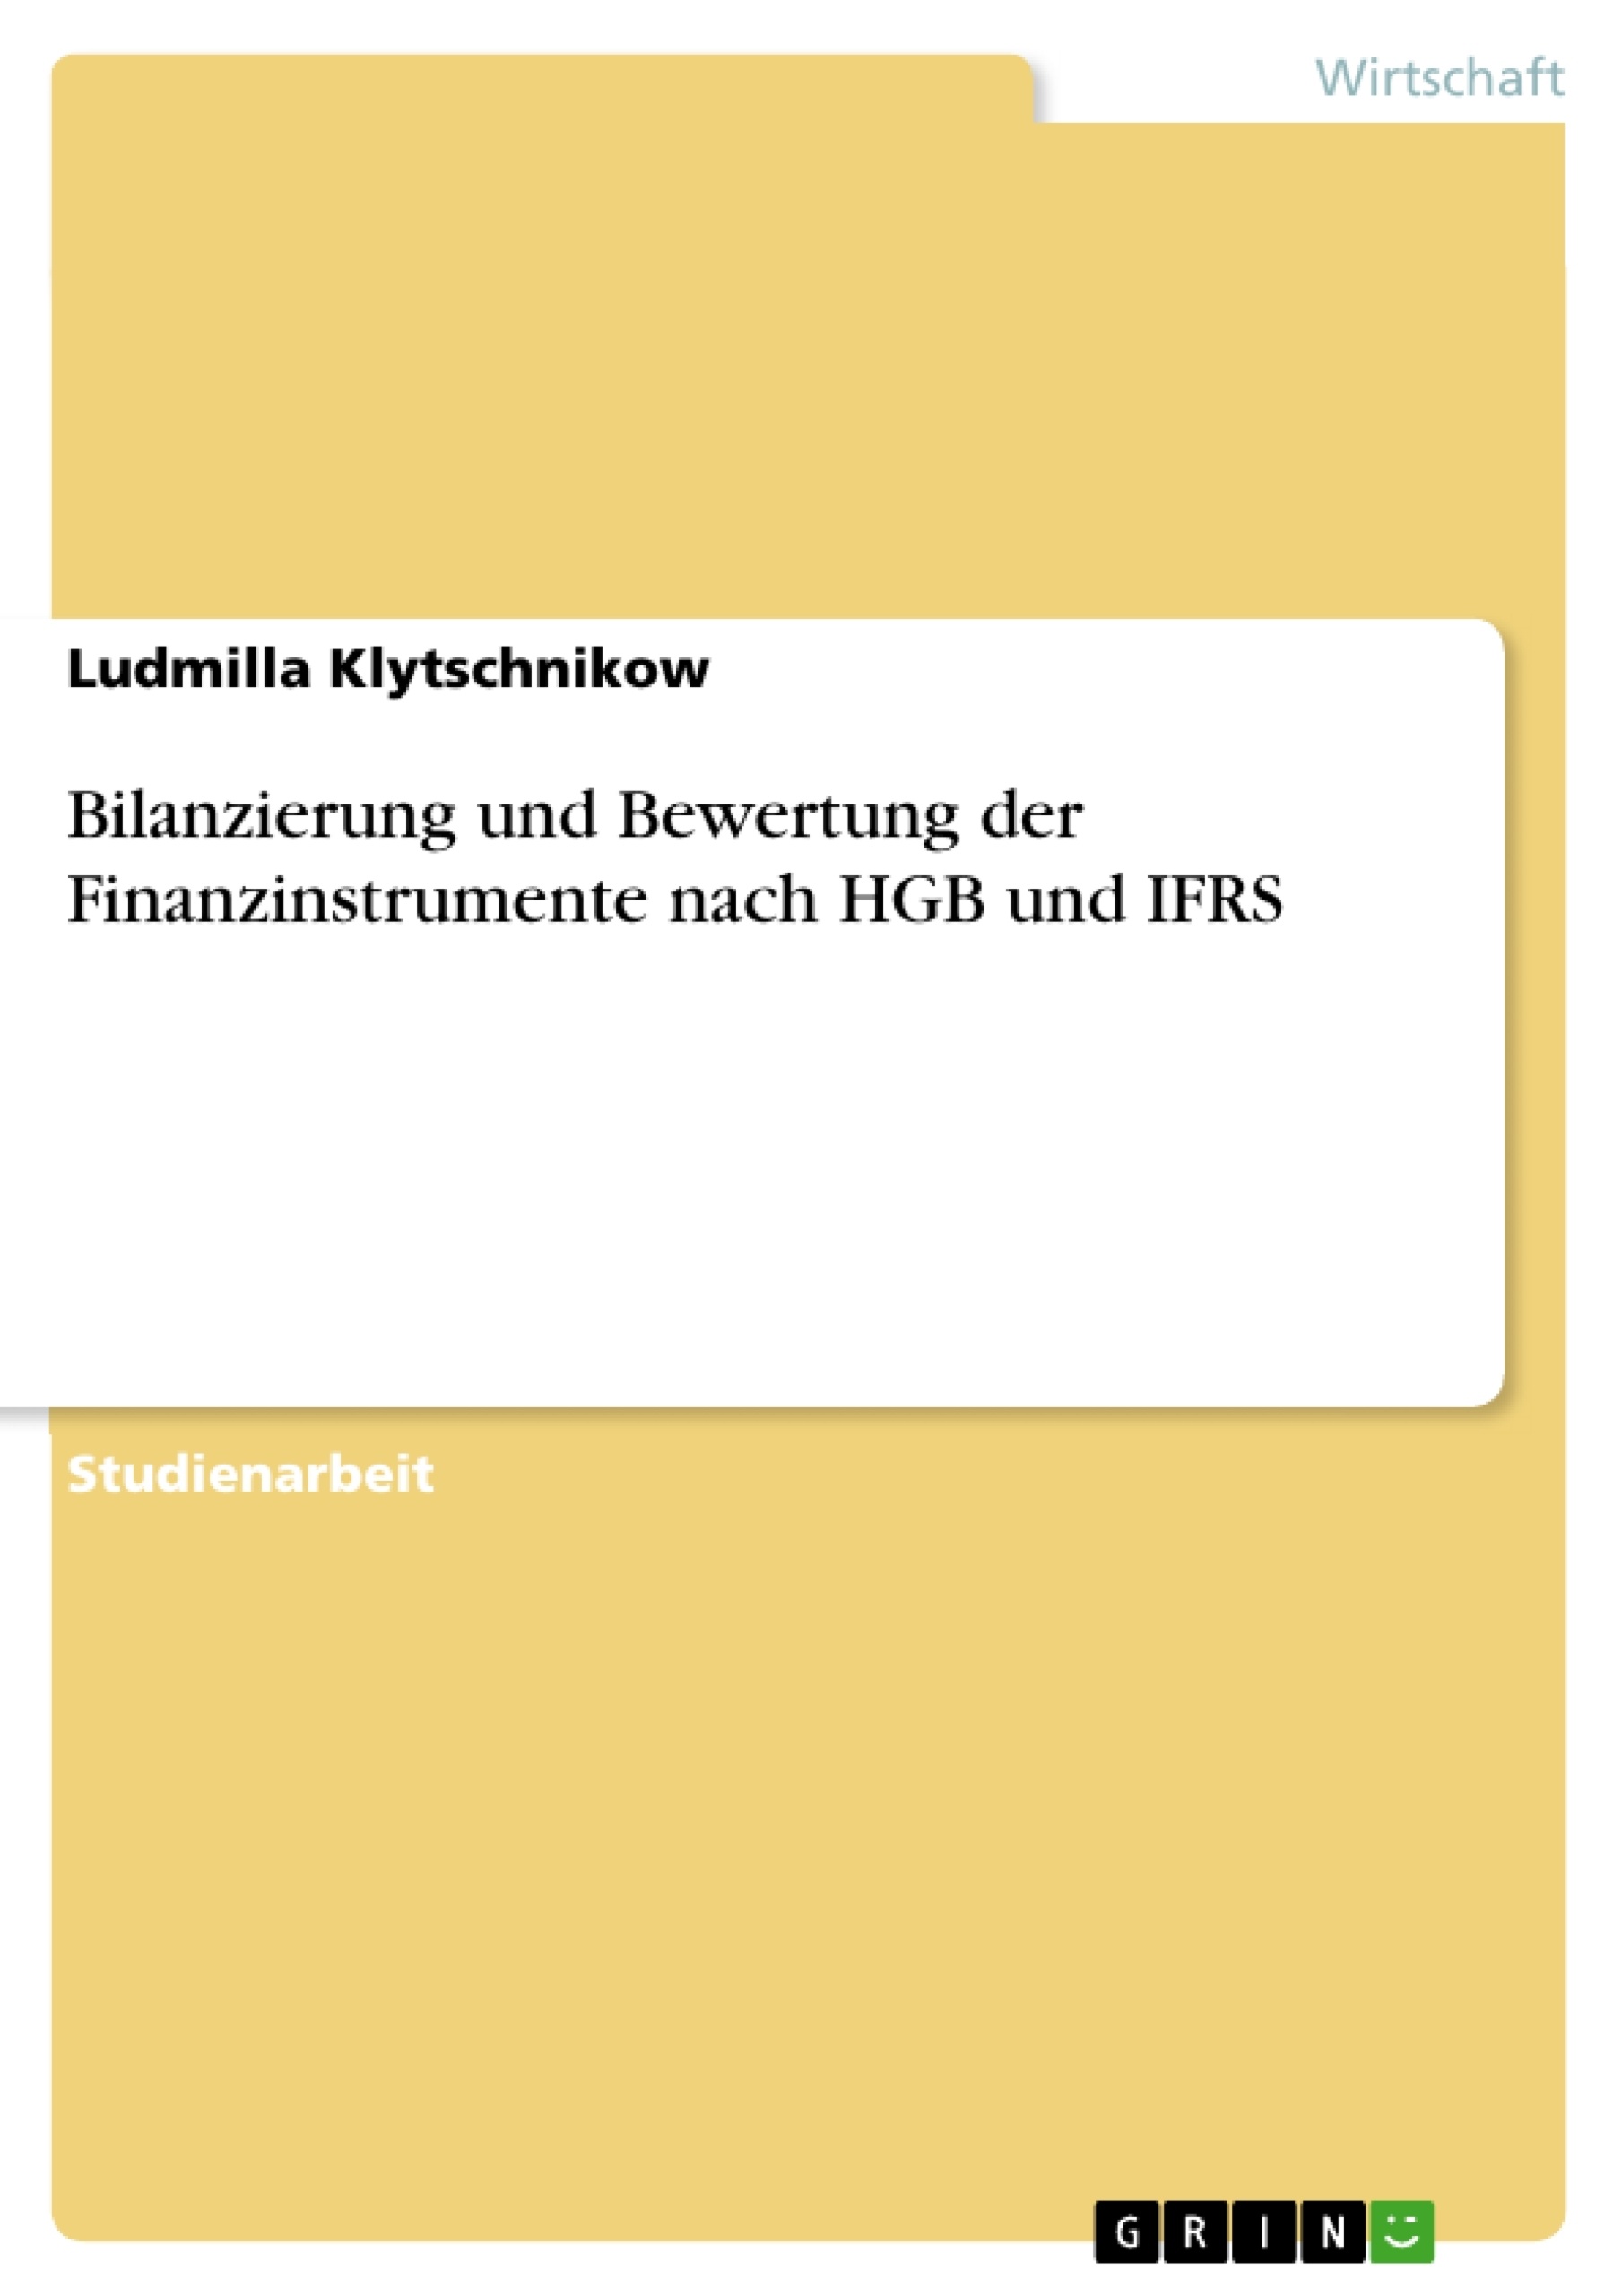 Titre: Bilanzierung und Bewertung der Finanzinstrumente nach HGB und IFRS